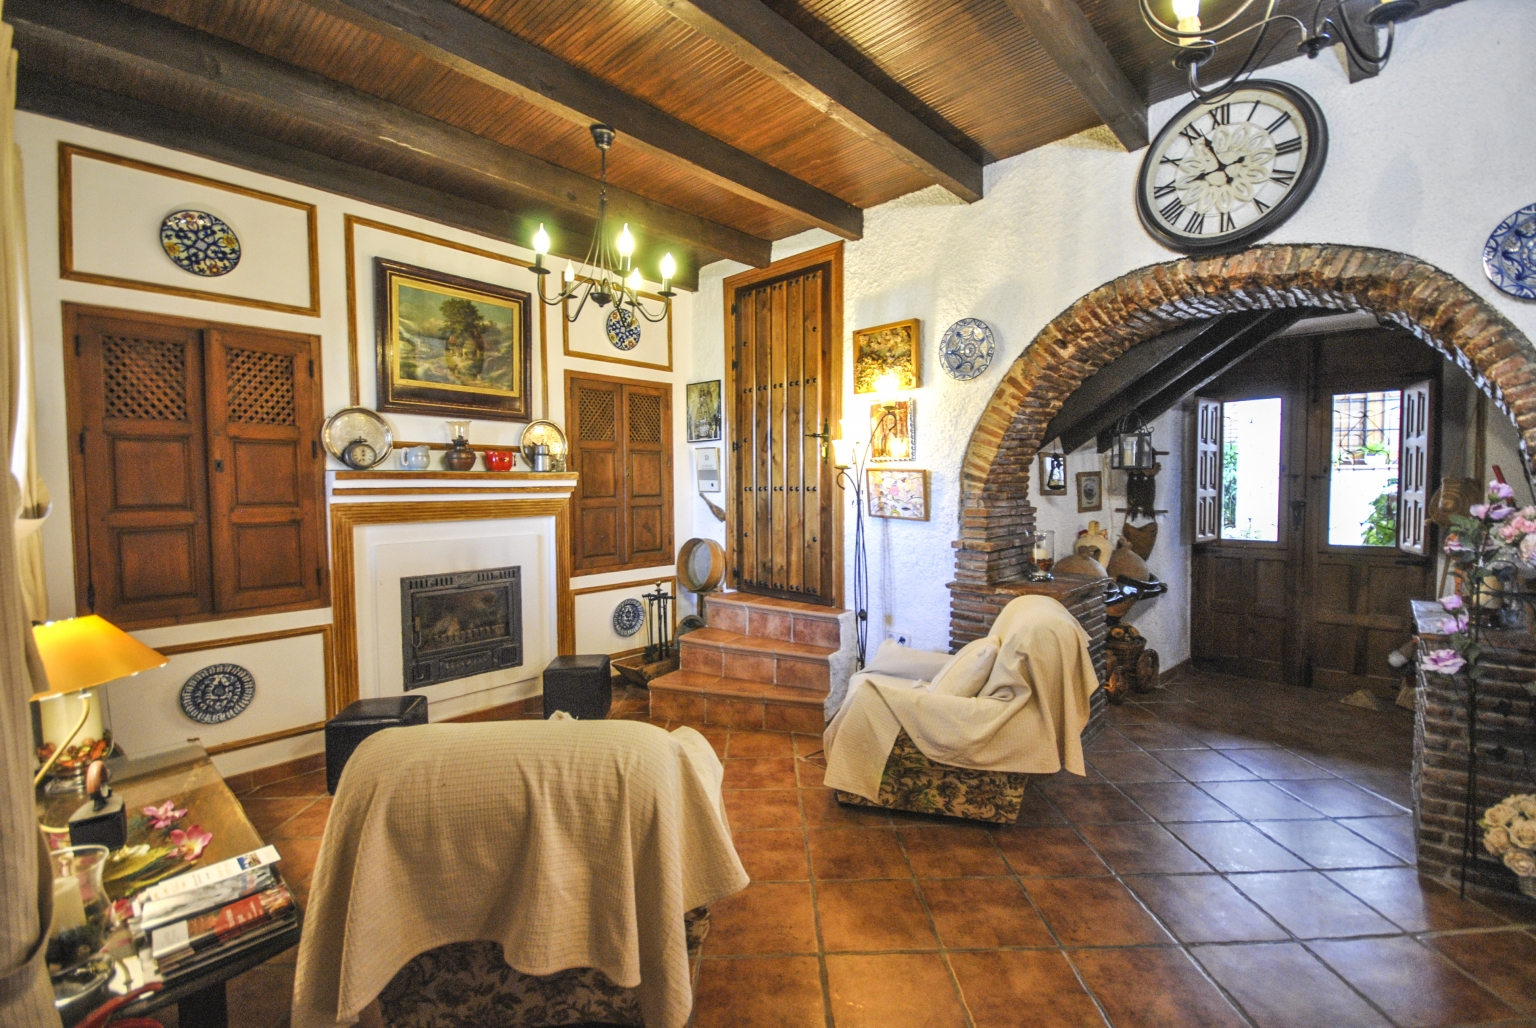 Salón comedor común con chimenea y pequeña cocina, para tus reuniones familiares o empresariales, en Cortijo Las Monjas. Un lugar acogedor en la Alta Axarquía, interior de la Costa del Sol, provincia de Málaga, Andalucía